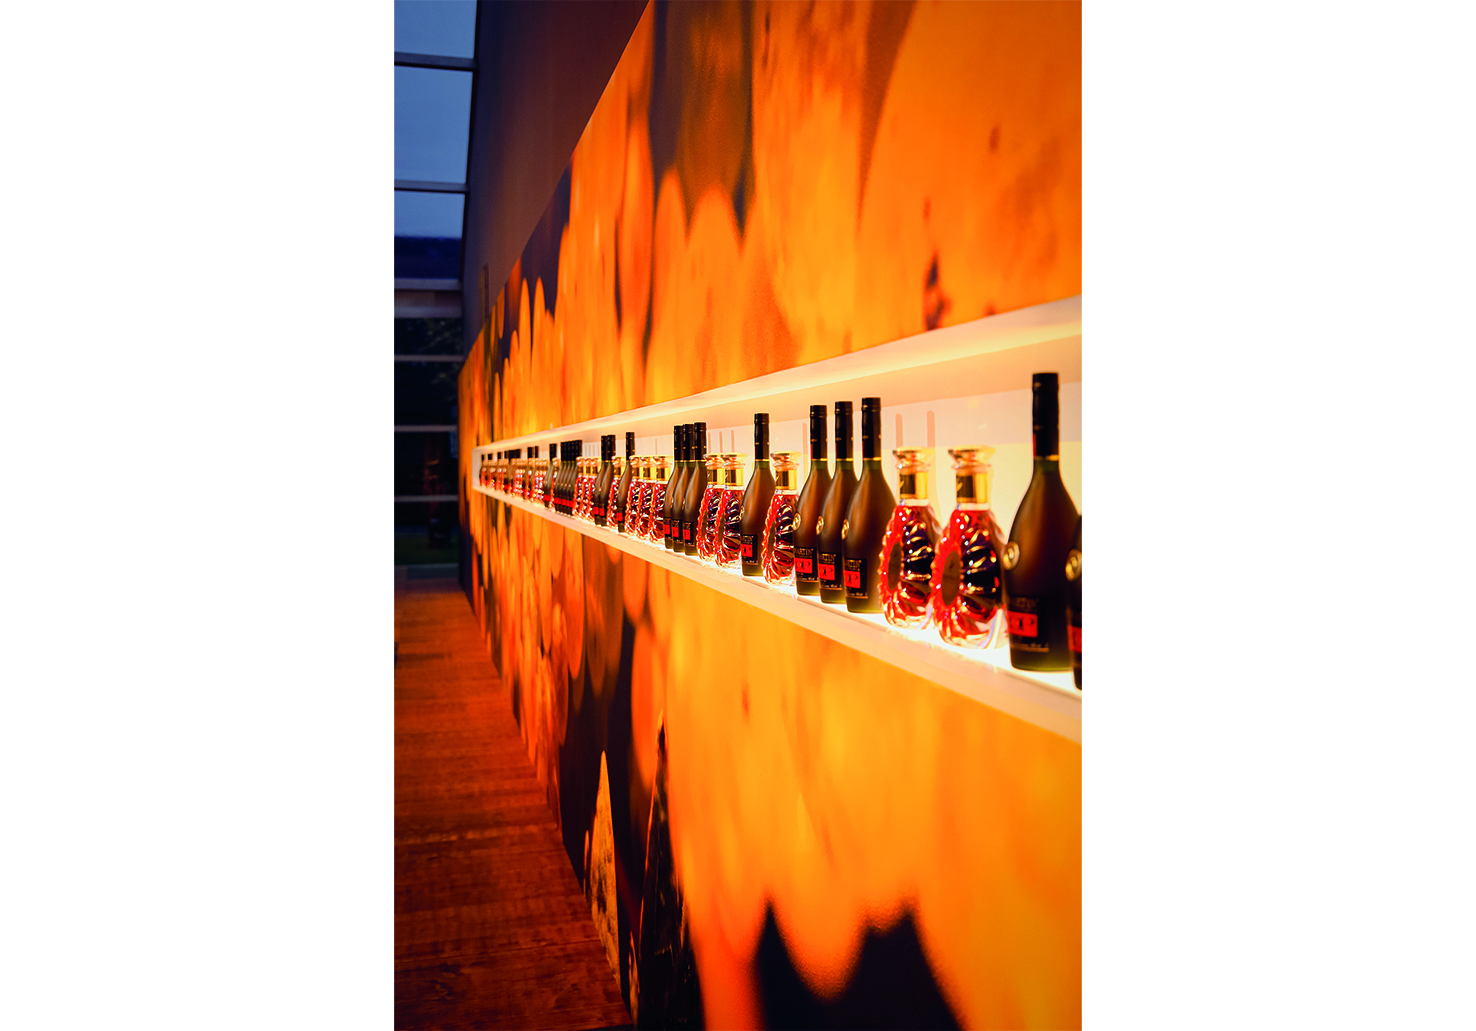 Derrière les comptoirs de mixologie, niche rétro-éclairée de 12 m de long présentant les flacons de Cognac Rémy Martin.